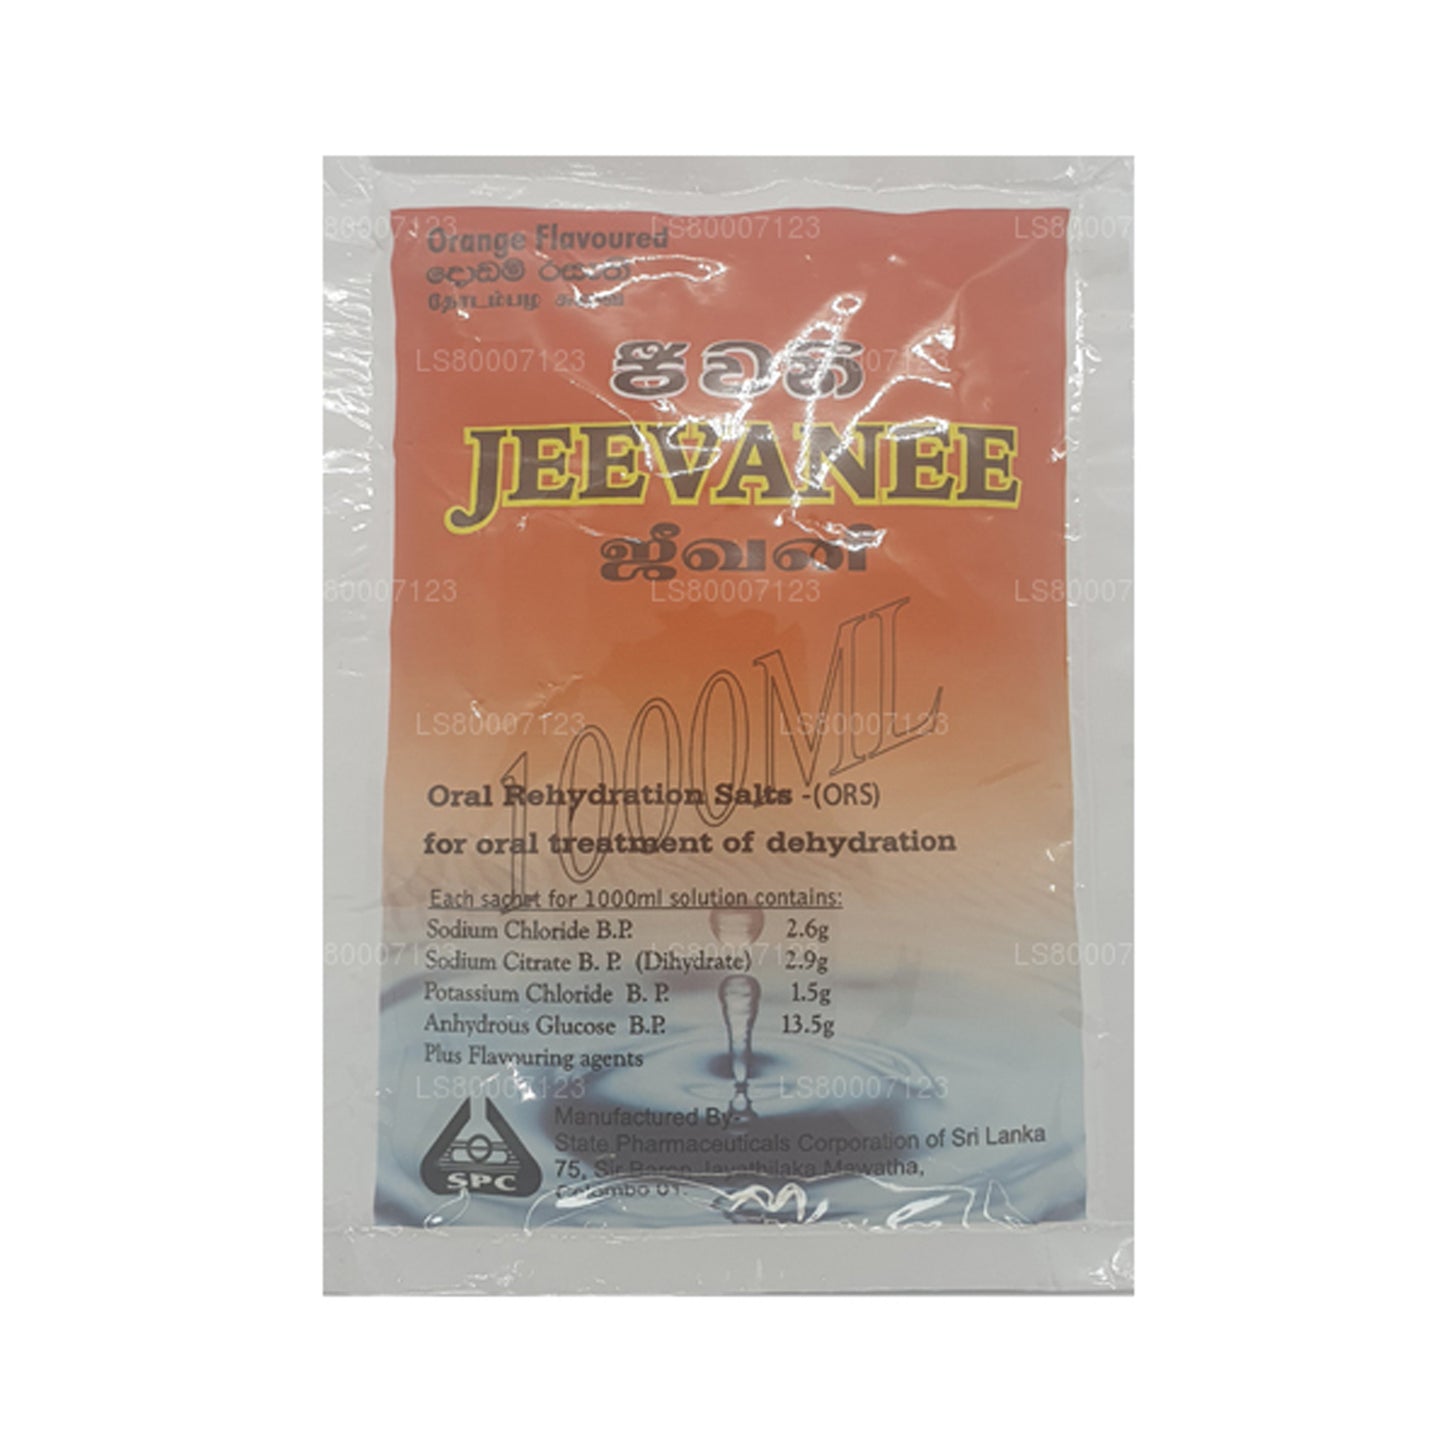 Sali per la reidratazione orale aromatizzati all'arancia Jeevanee (25 bustine)